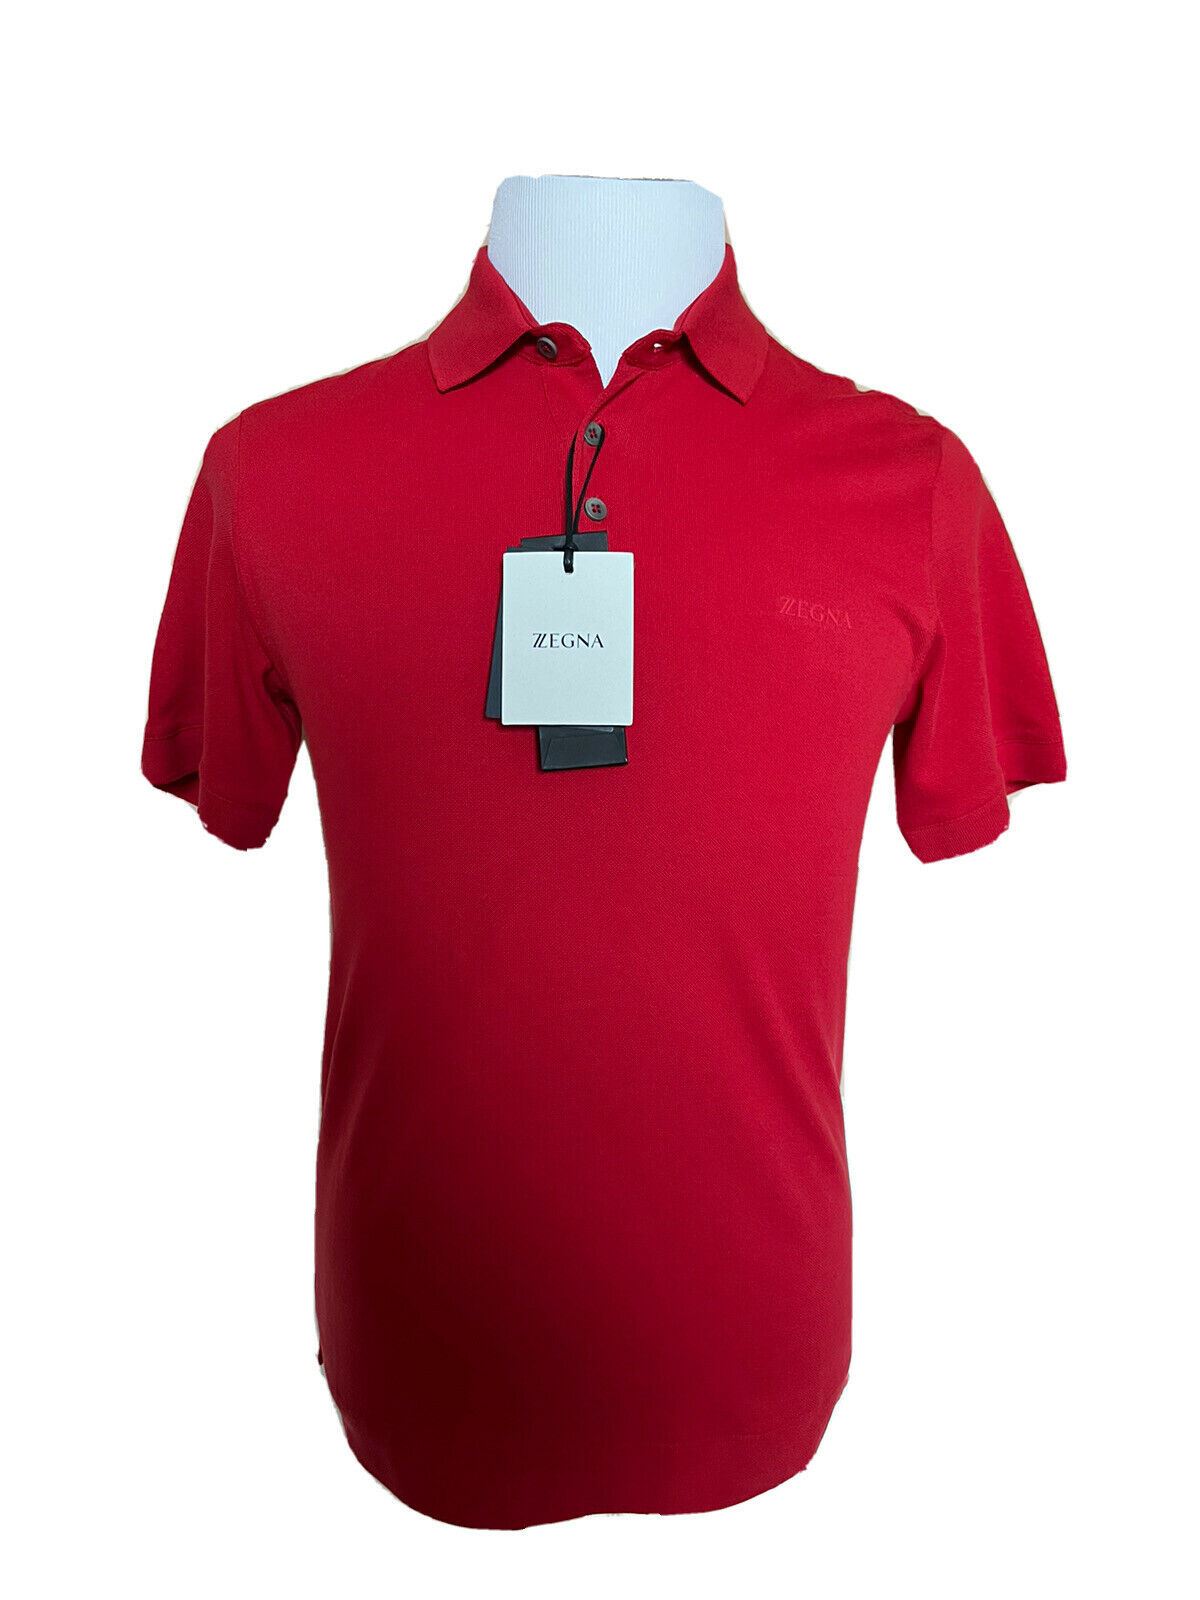 Neu mit Etikett: 375 $ ZEGNA Baumwoll-Poloshirt mit Hemdärmeln Rot XS ZZF600